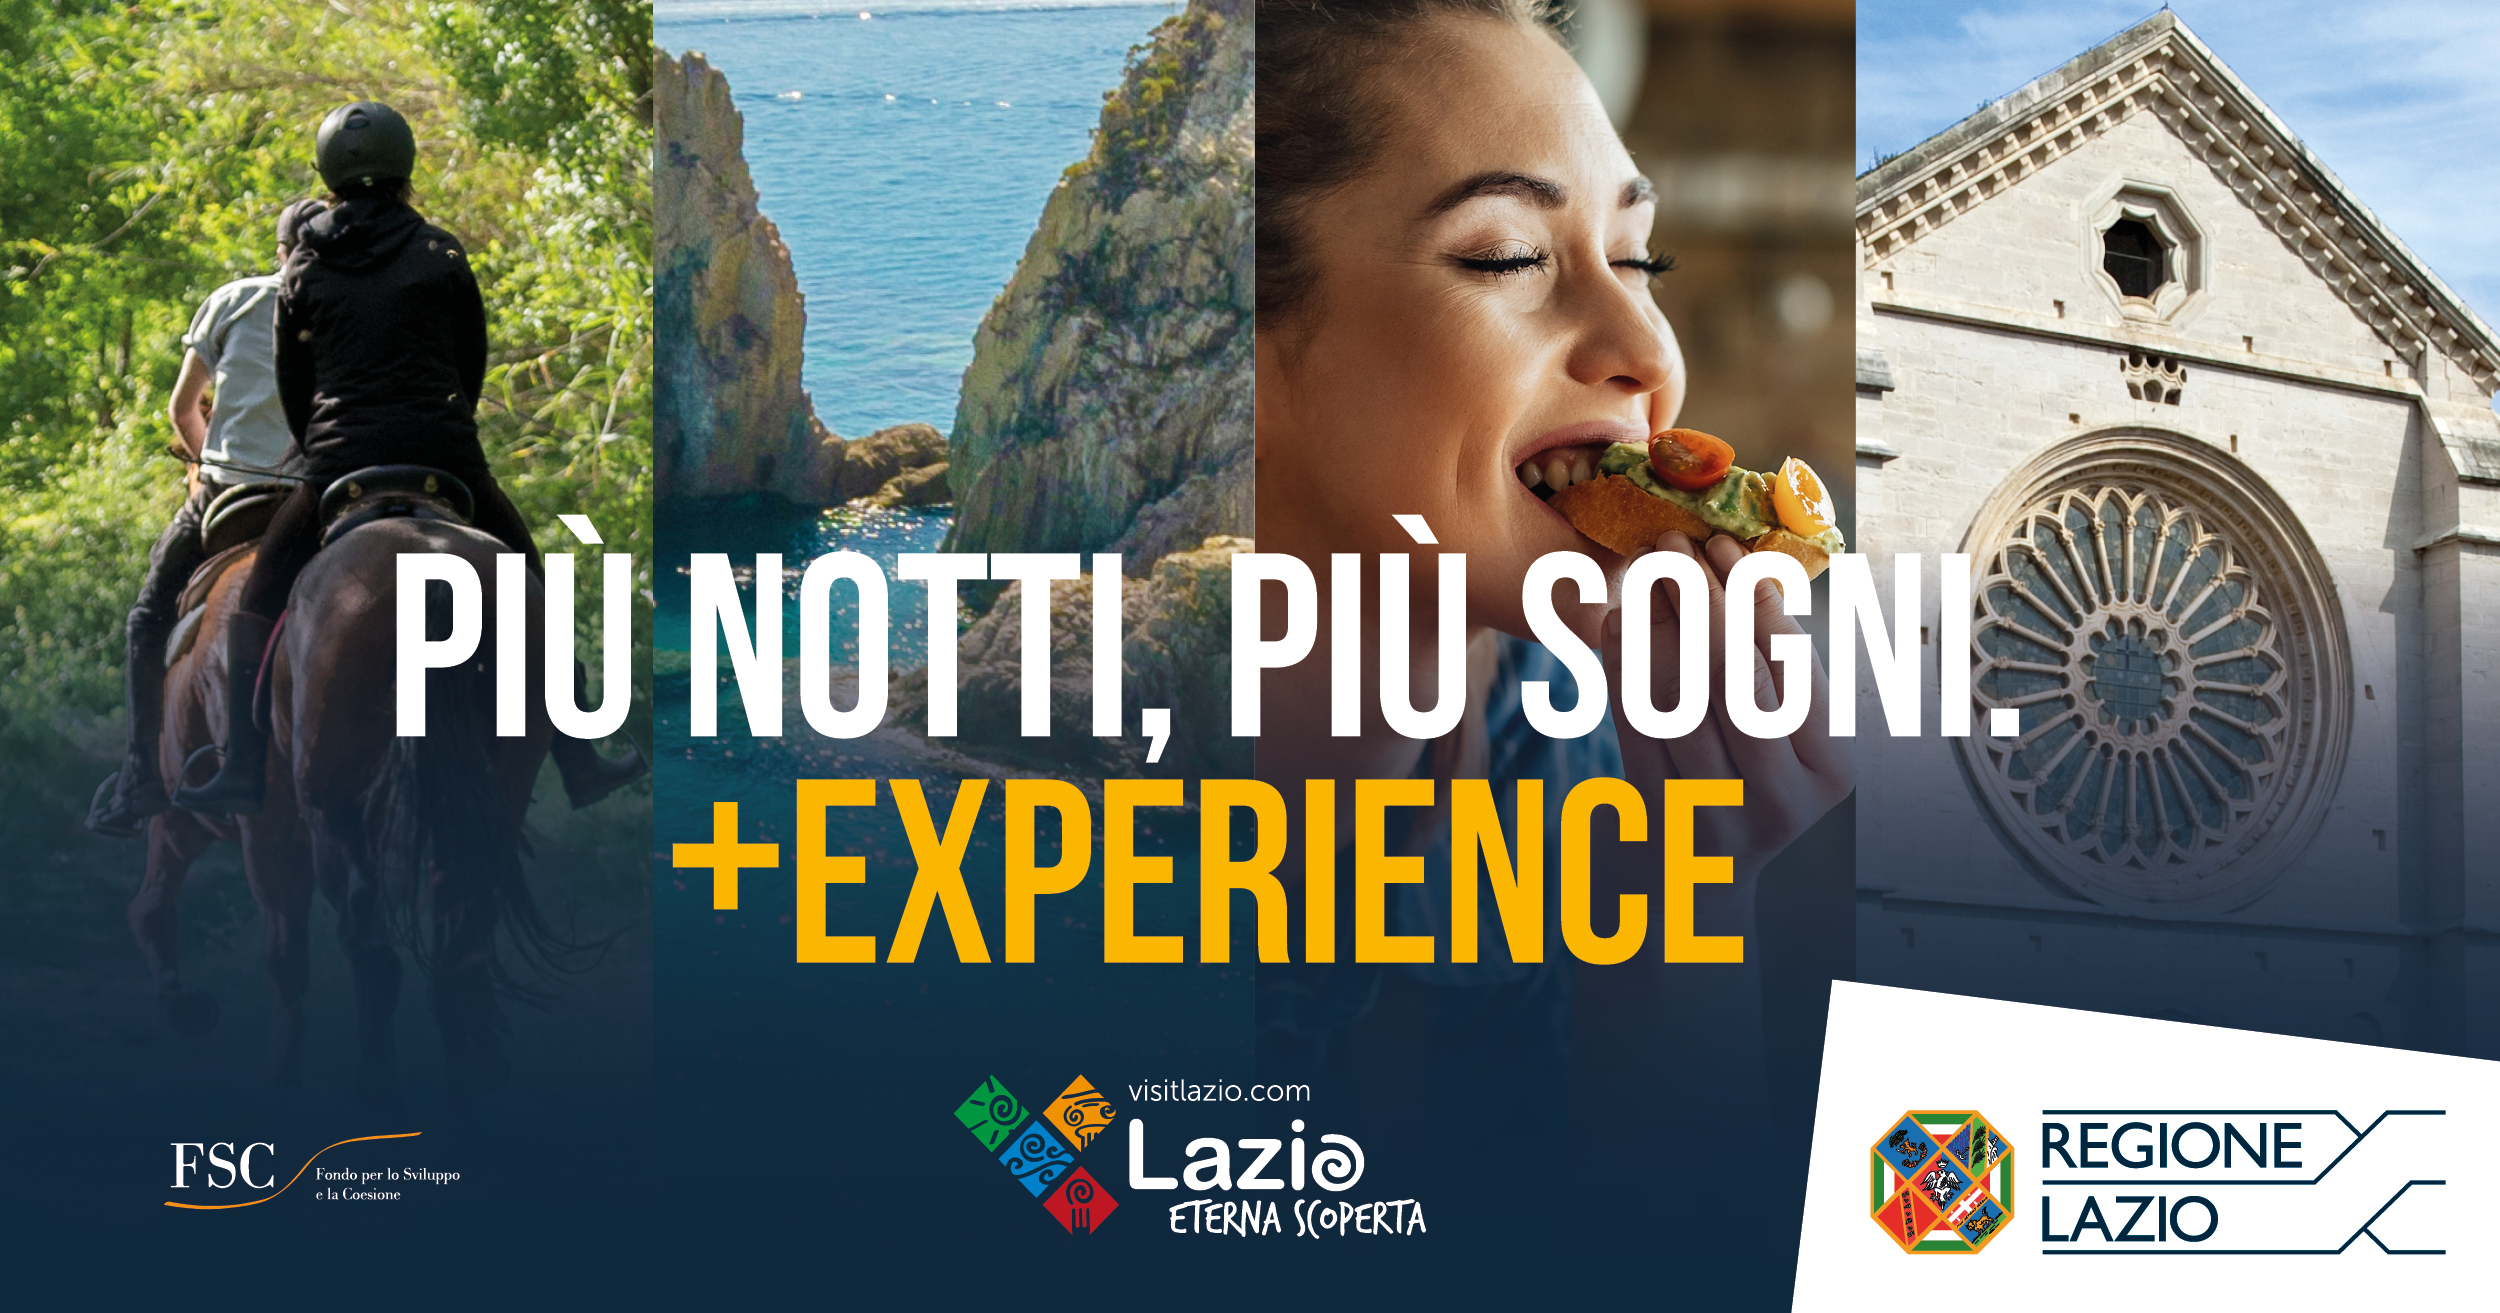 Più notti, più sogni. + Experience”: prenota la tua vacanza nel Lazio